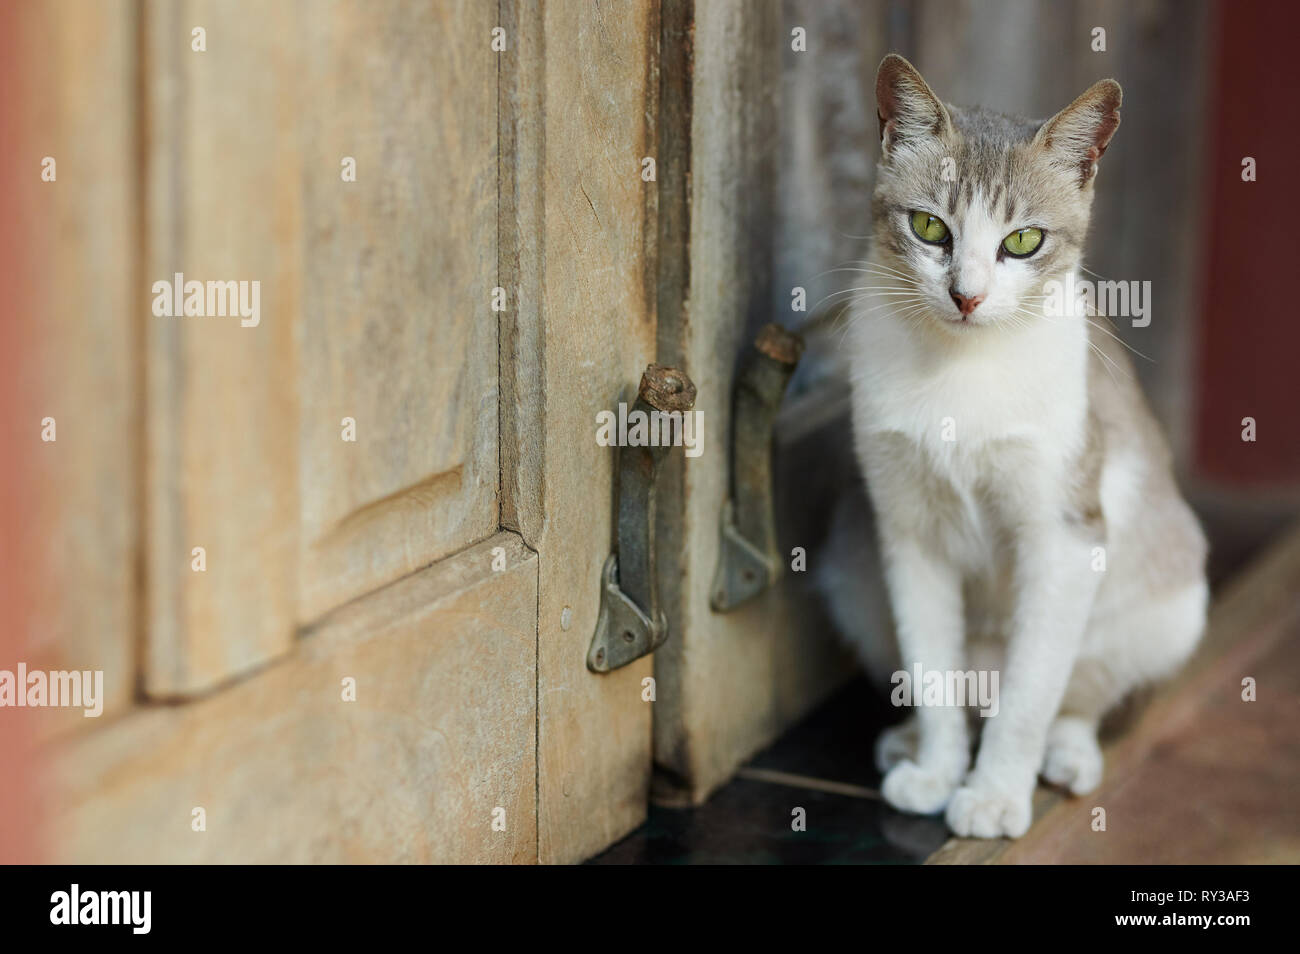 Gatto con gli occhi verdi sedersi accanto alla porta vista ravvicinata Foto Stock